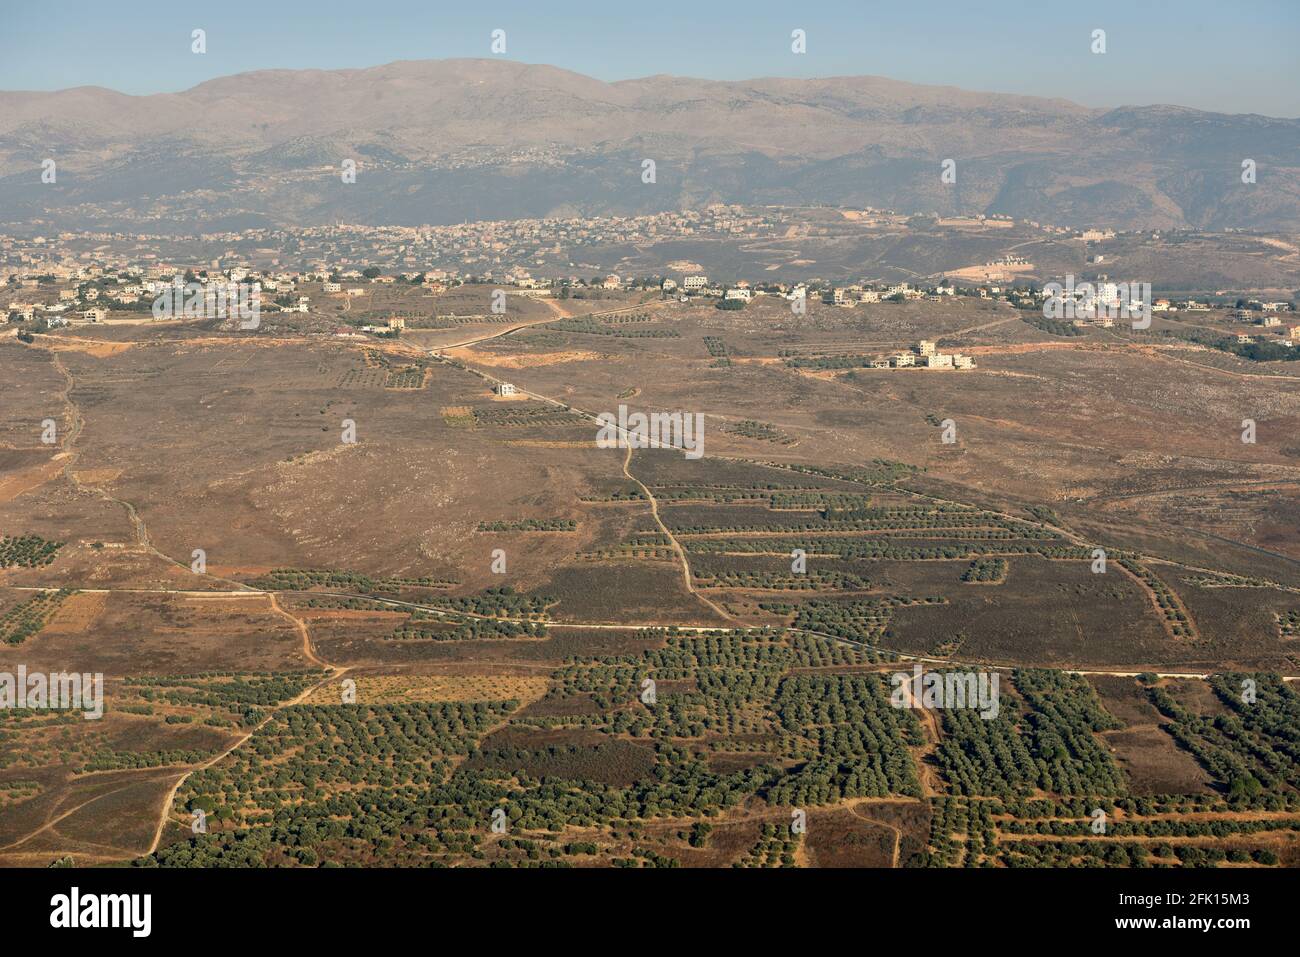 Vue sur le sud du Liban depuis le château de Beaufort, Nabatiye, sud du Liban. Banque D'Images